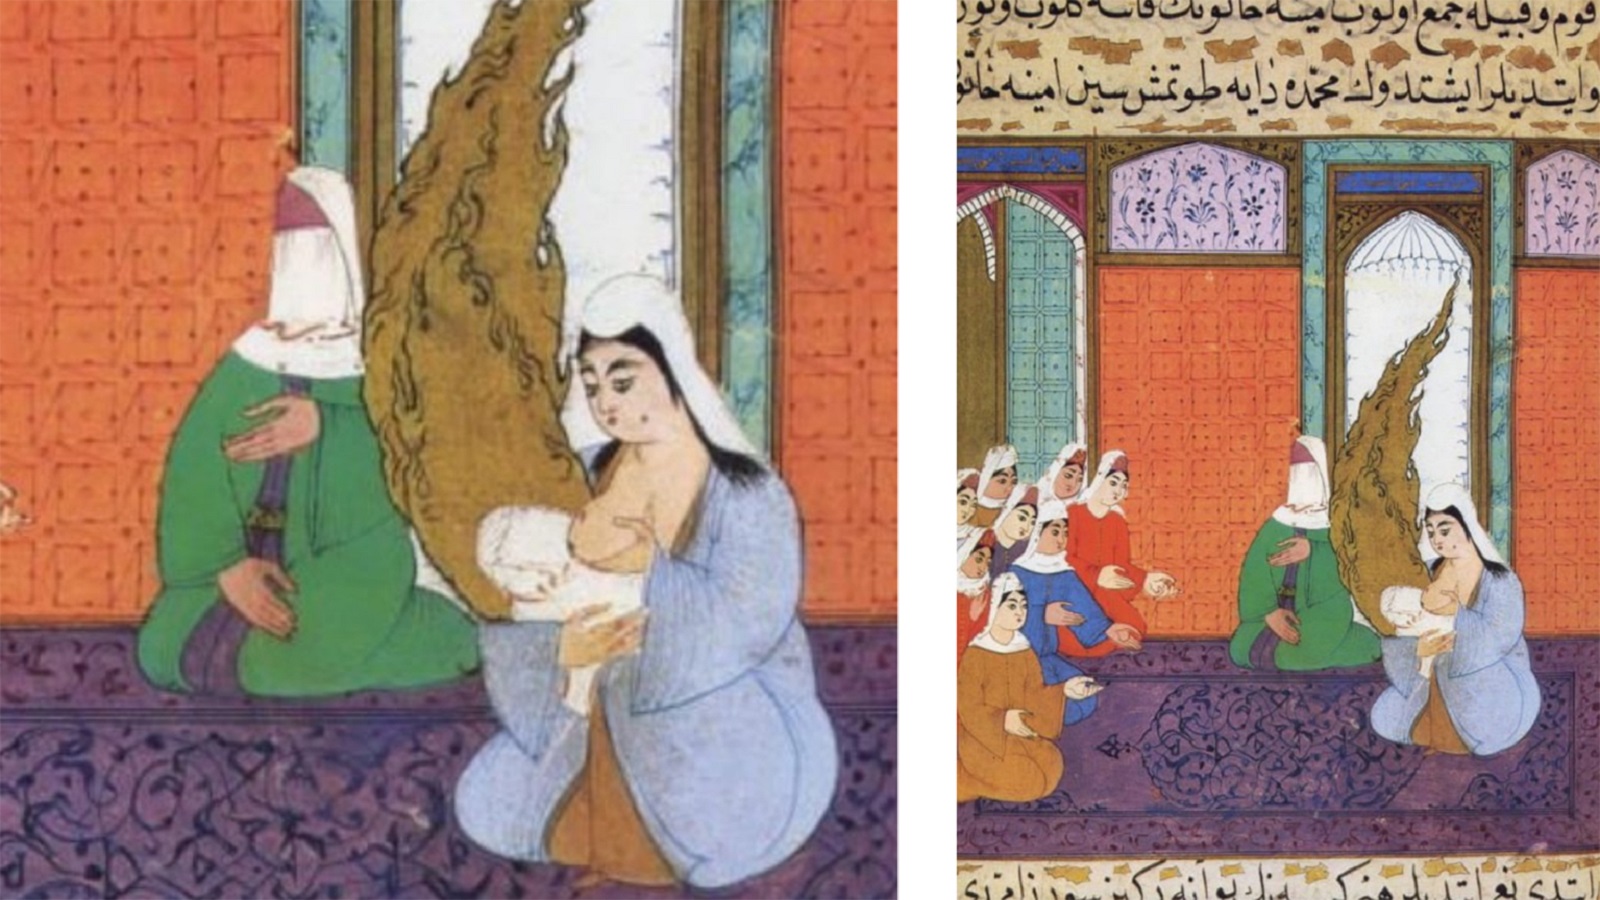 حليمة السعدية ترضع النبي الطفل في حضور أمه آمنة وجمع من النساء، "جامع سير النبي"، 